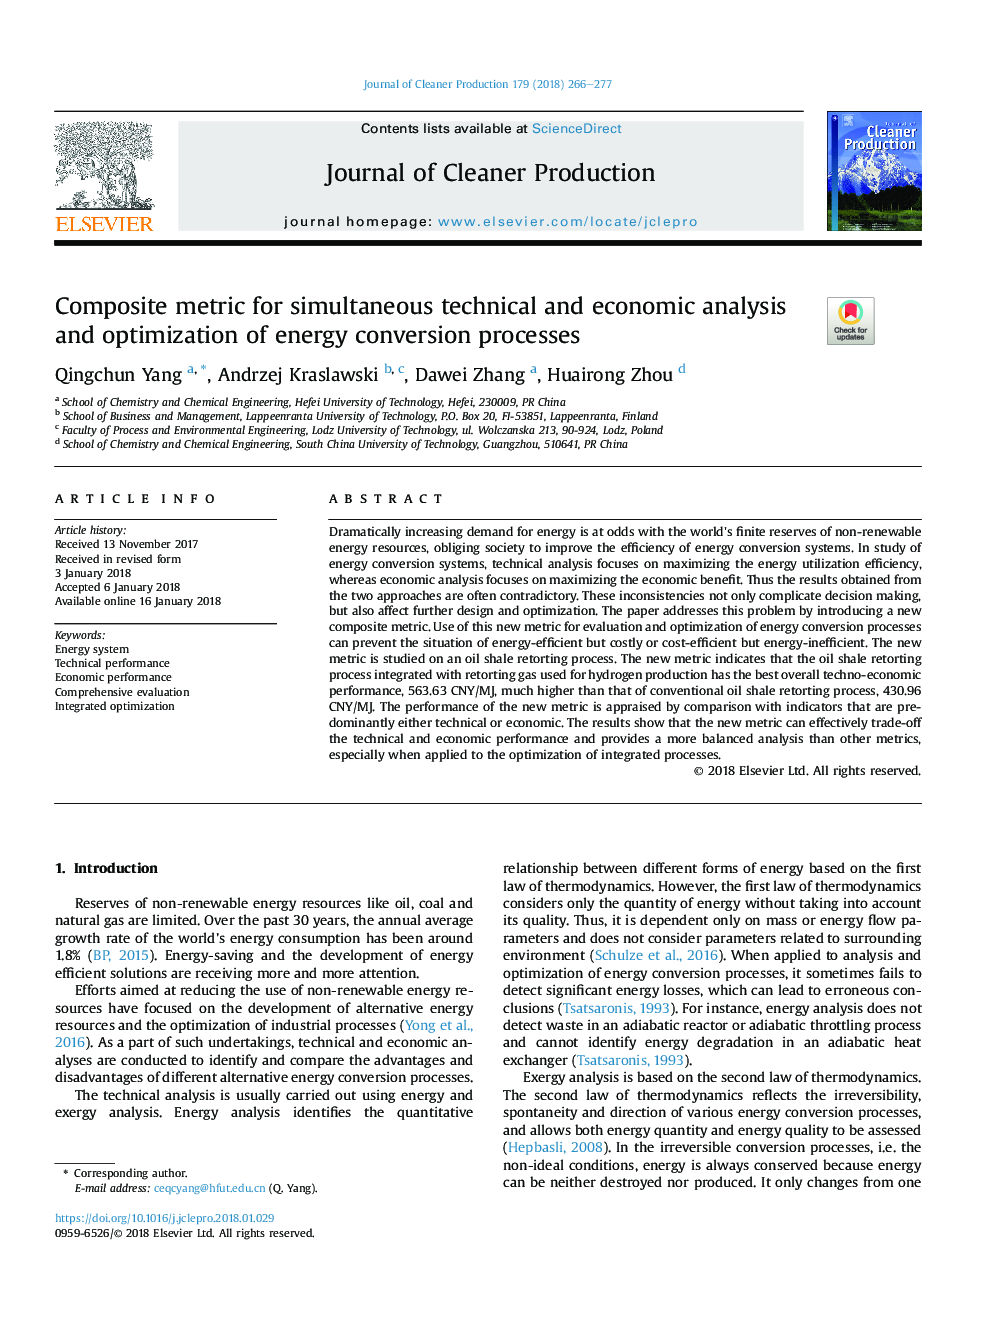 متریک کامپوزیت برای تجزیه و تحلیل همزمان فنی و اقتصادی و بهینه سازی فرآیند تبدیل انرژی 